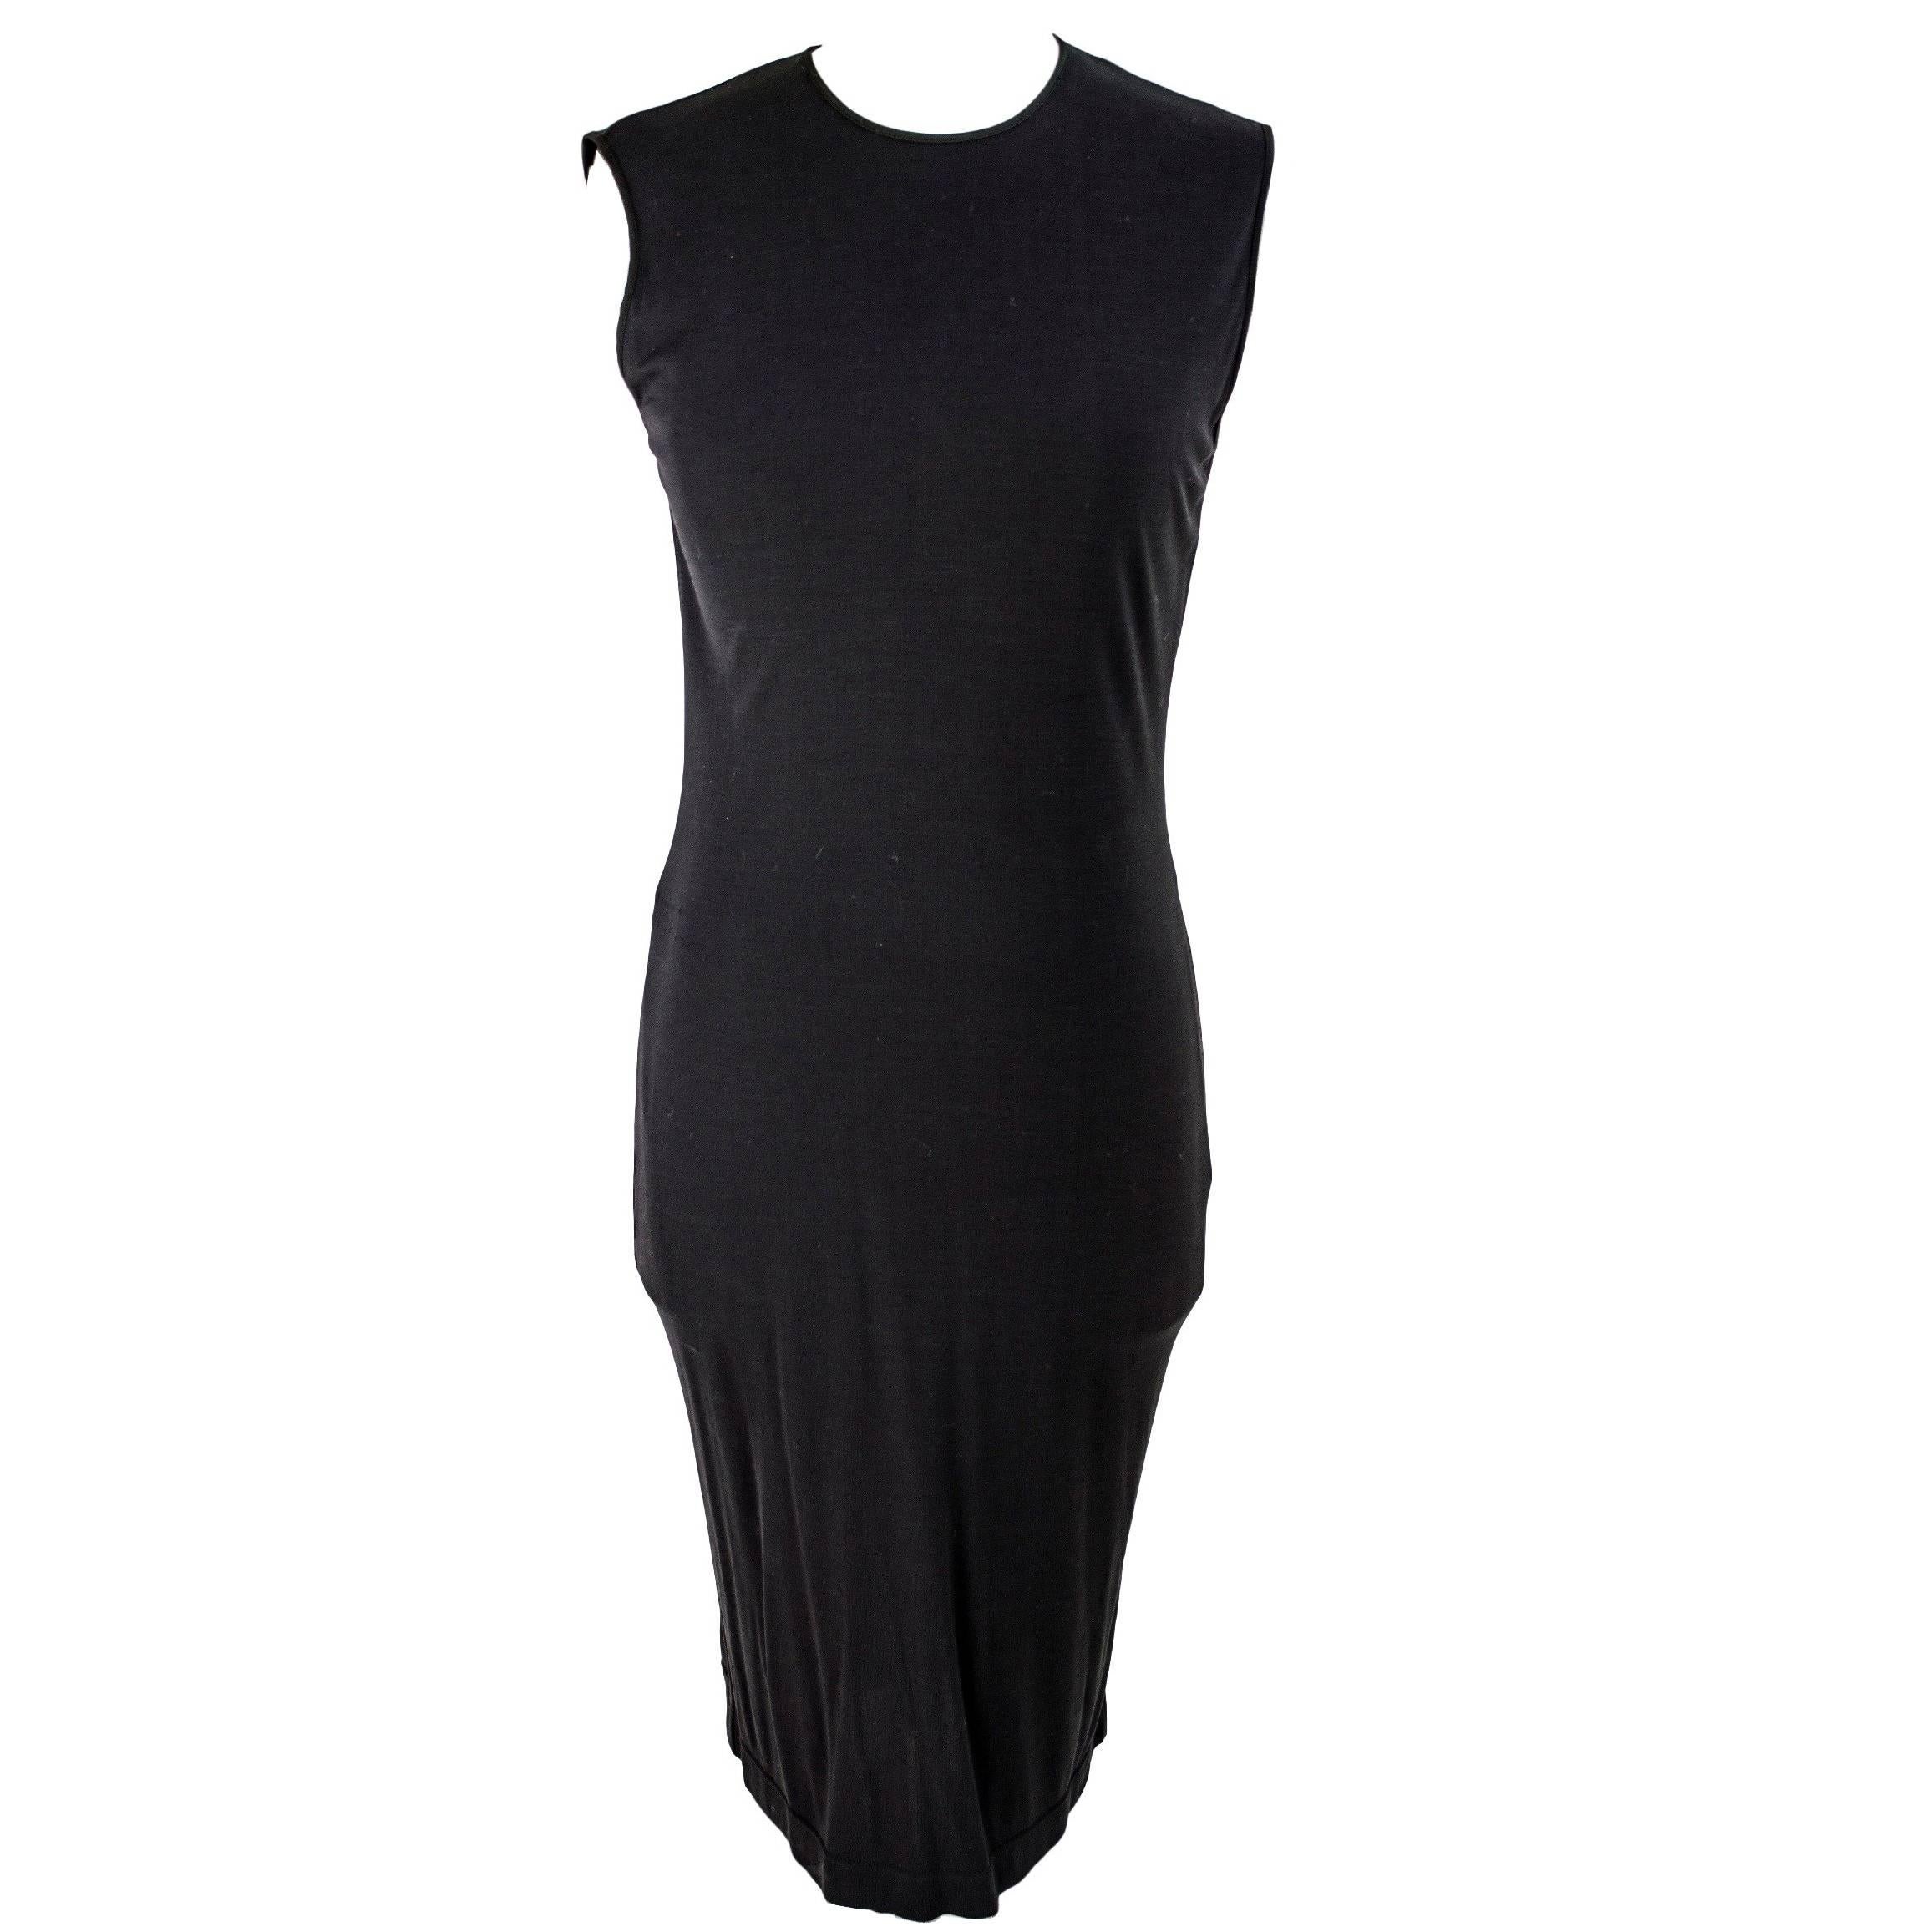 Gianfranco Ferrè 1980s sheath dress women's black silk blend size 40